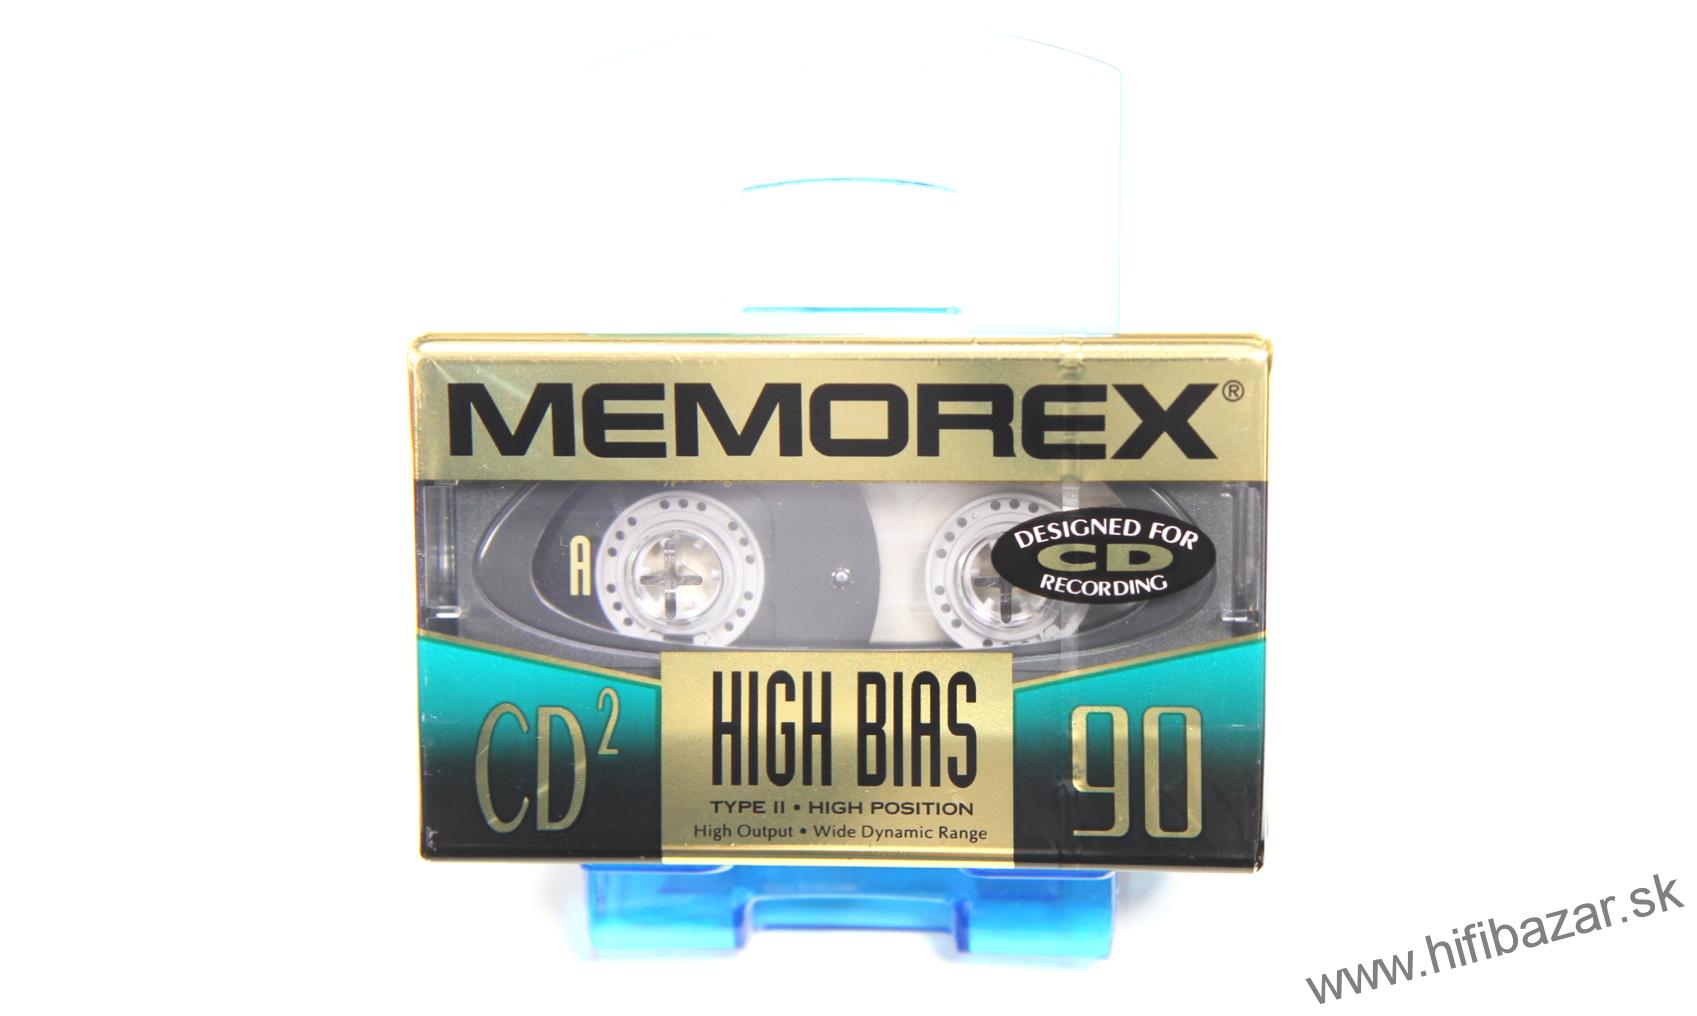 MEMOREX CD2-90 High Bias